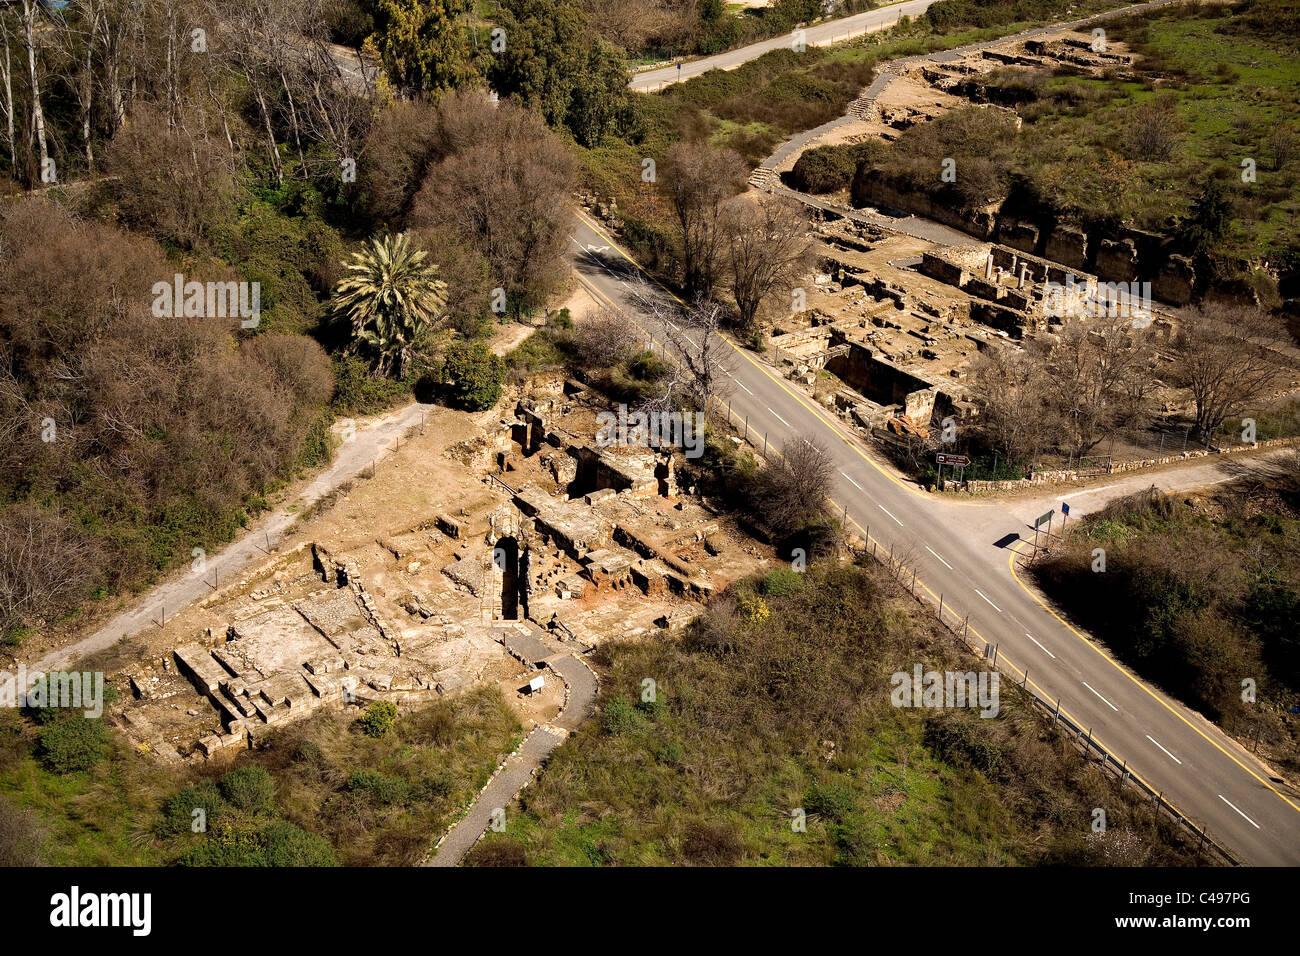 Photographie aérienne des ruines de la ville romaine Banias dans le nord du Golan Heights Banque D'Images